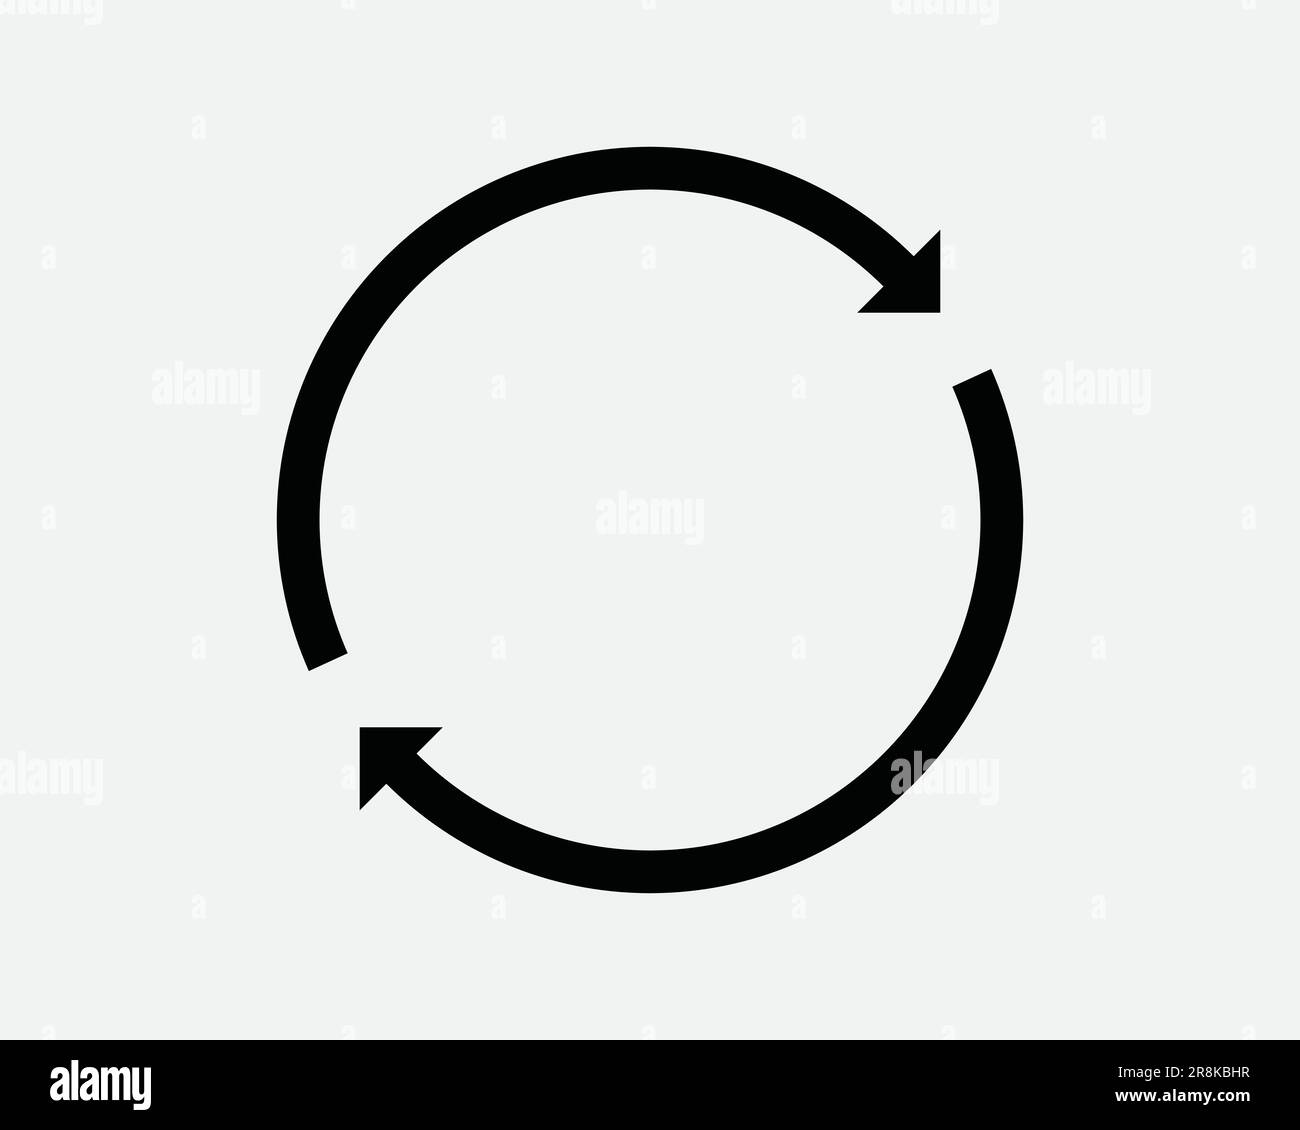 Icône de flèche circulaire. Répéter le cycle de rafraîchissement de recyclage boucle ronde processus de réinitialisation de spin signe noir blanc Illustration graphique Clipart EPS Vector Illustration de Vecteur